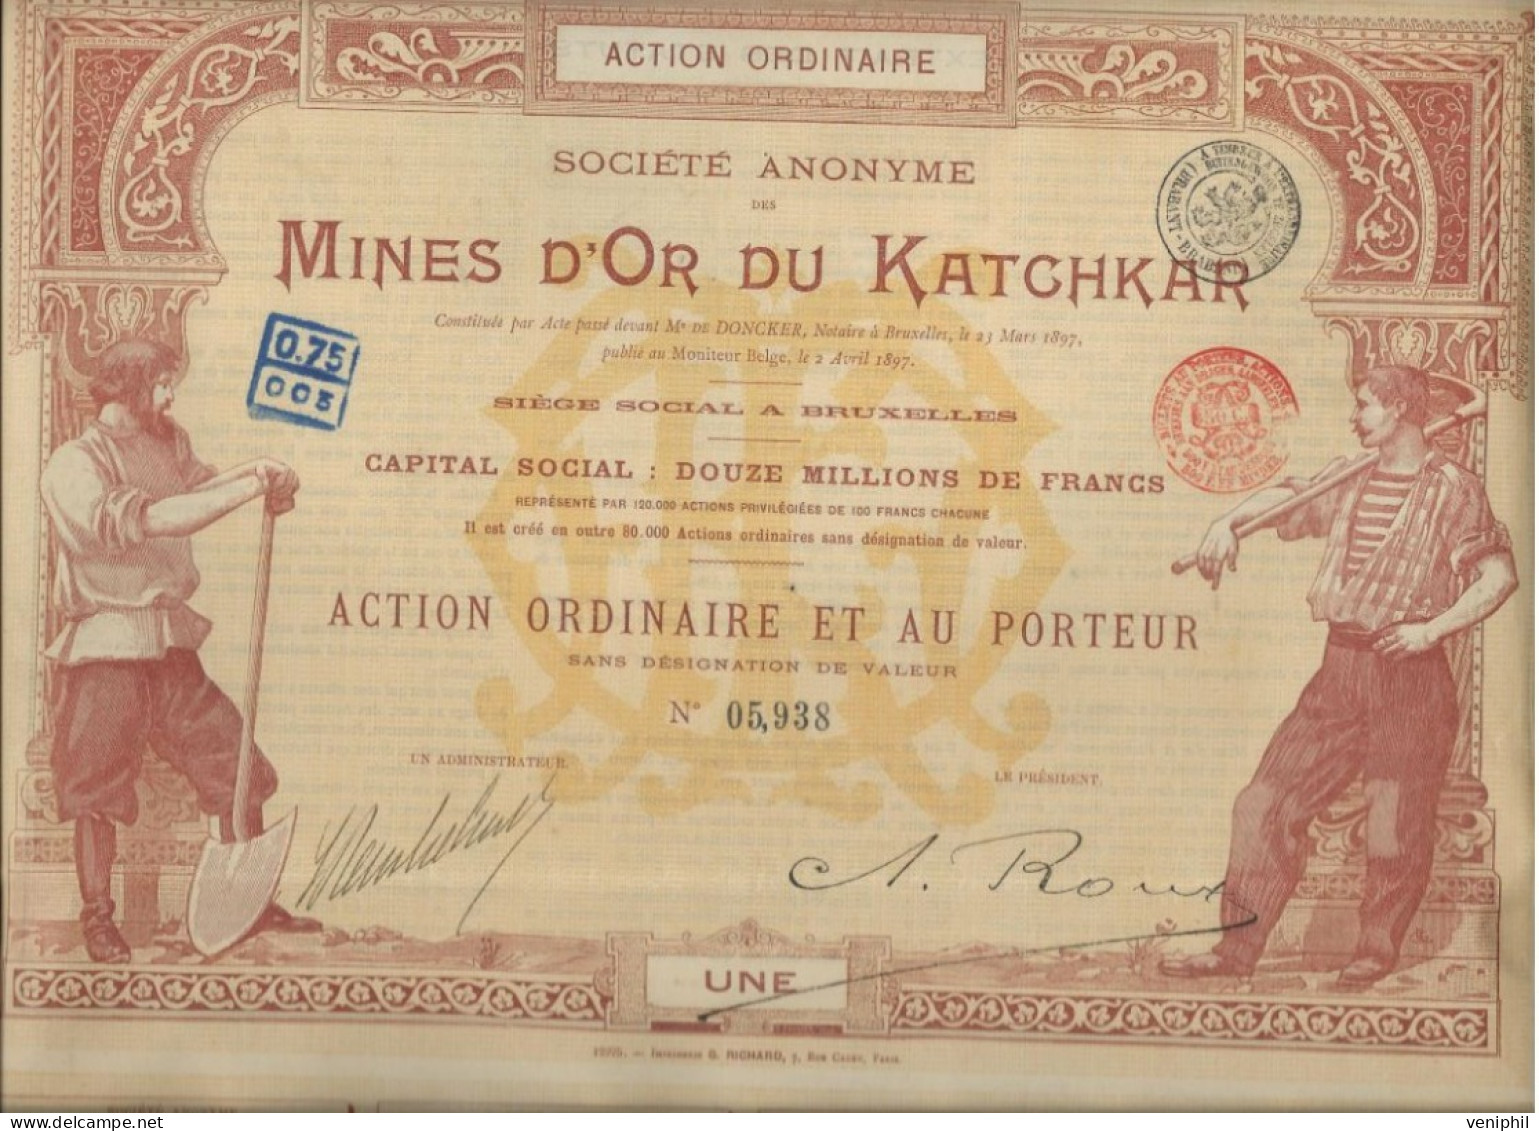 MINES D'OR DU KATCHKAR (ARMENIE RUSSIE ) TITRE DE CINQ ACTIONS ORDINAIRES -ANNEE 1897 - Miniere